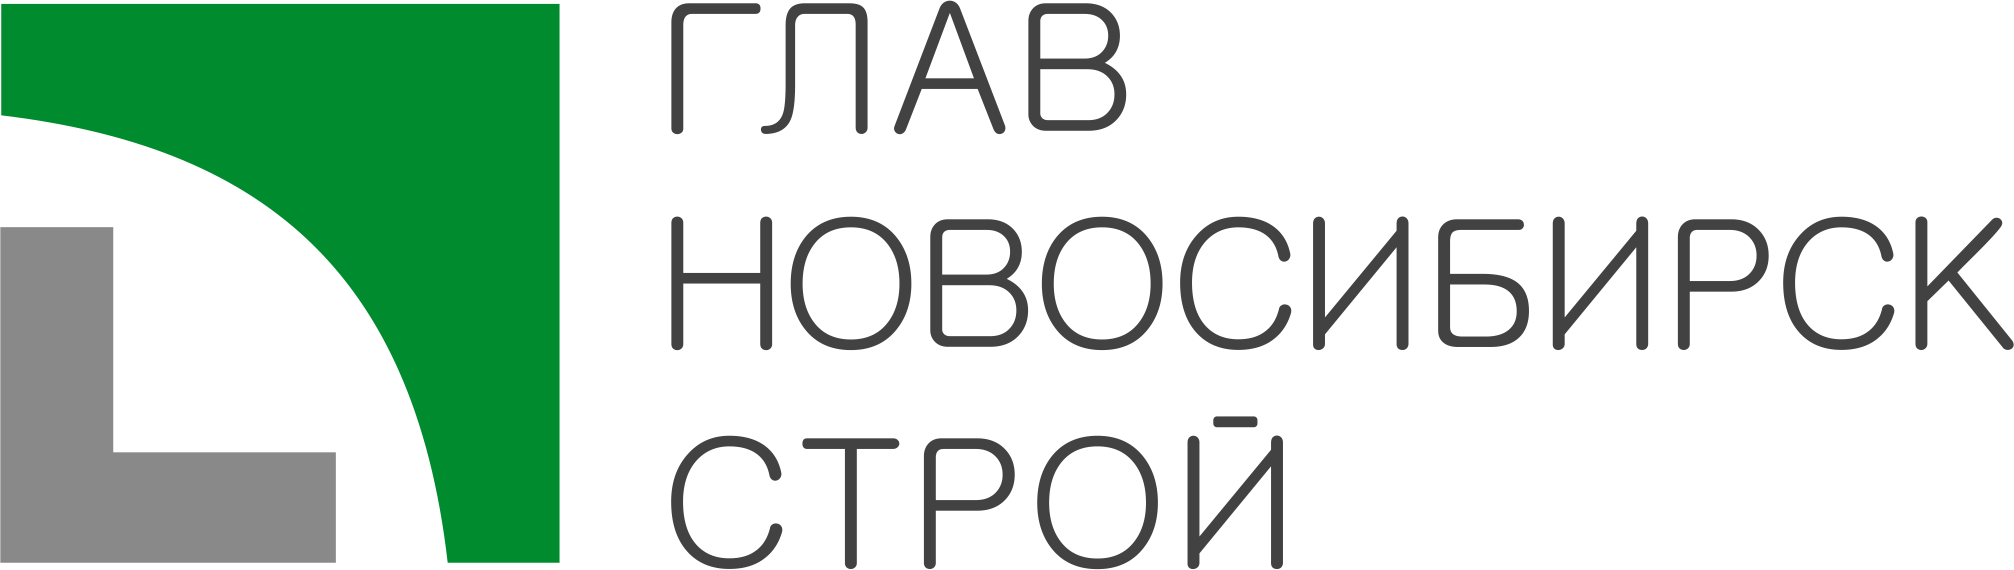 Логотипы в png